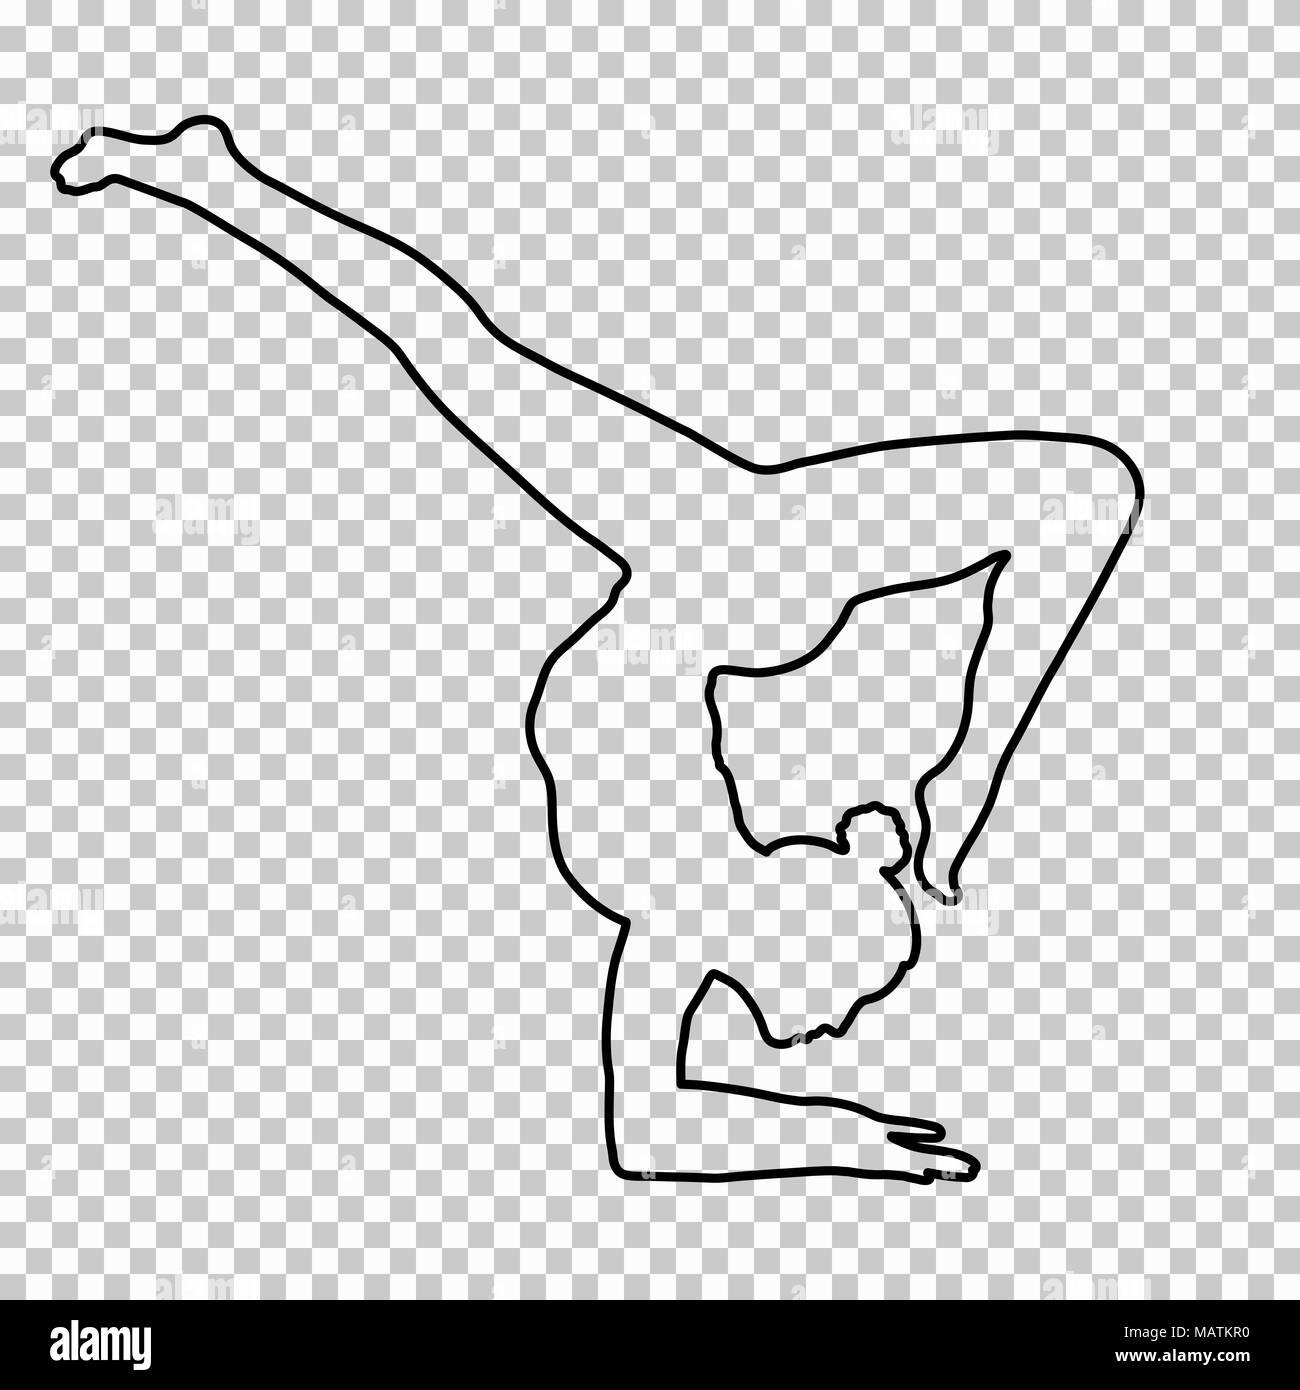 Überblick Abbildung Frau Handstand auf transparentem Hintergrund, silhouette Mädchen macht einen Stand auf der Hand, Yoga, Gymnastik, Kontur Portrait, schwarze und weiße Linie zeichnen, Schablone. Vector Illustration Stock Vektor